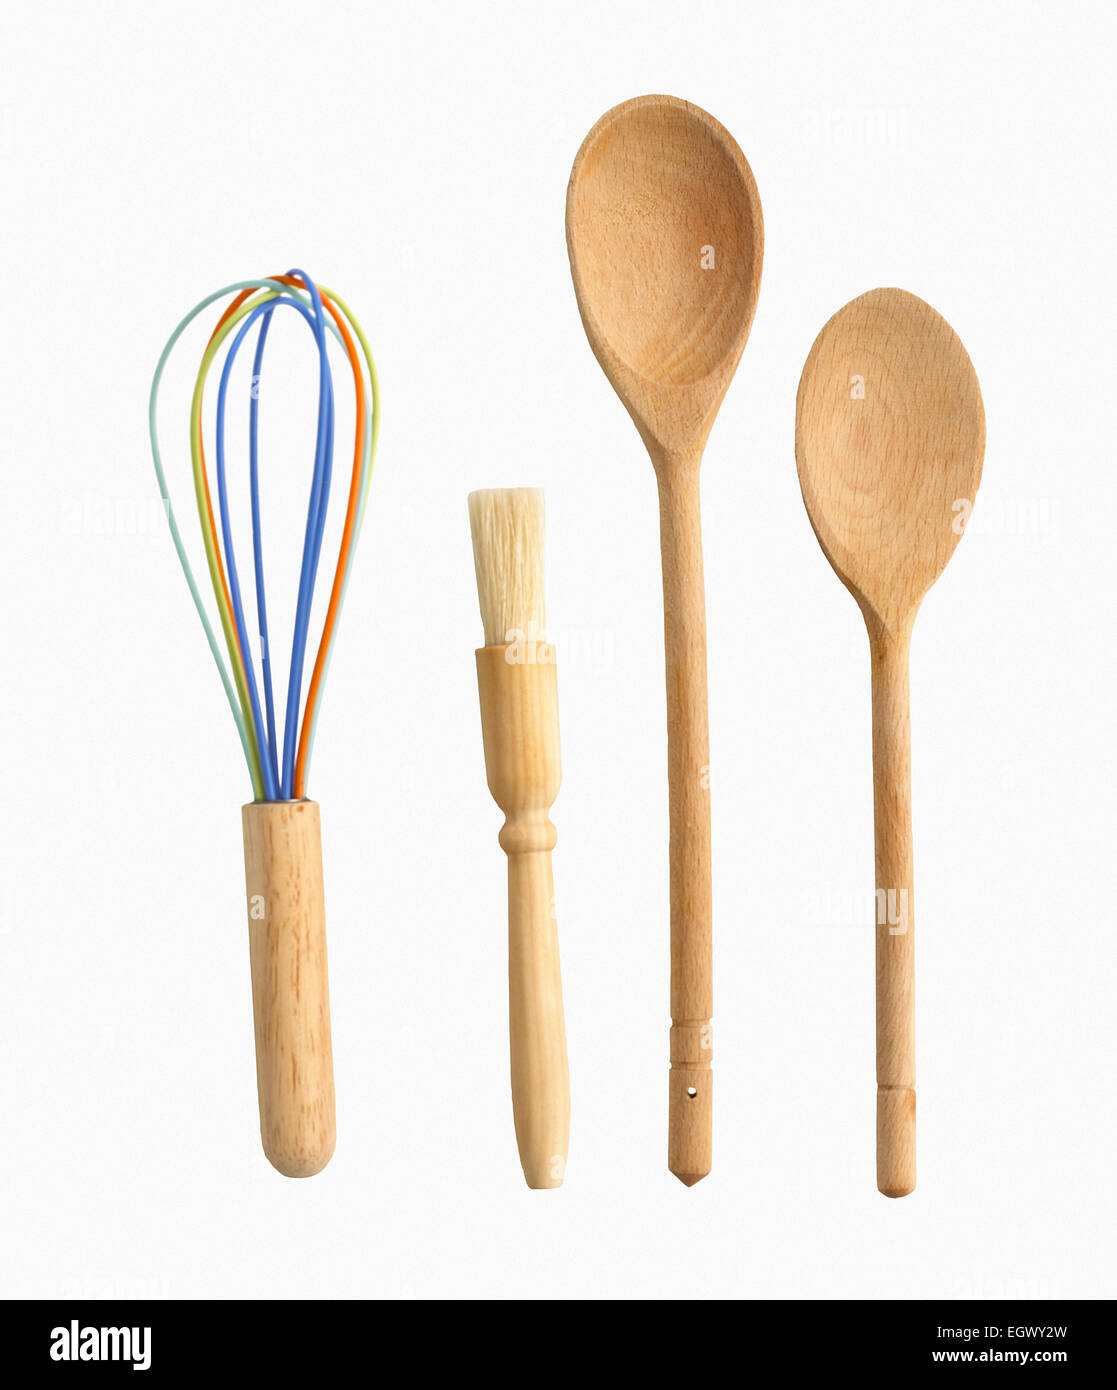 Batir, brocha, cucharas de madera Foto de stock